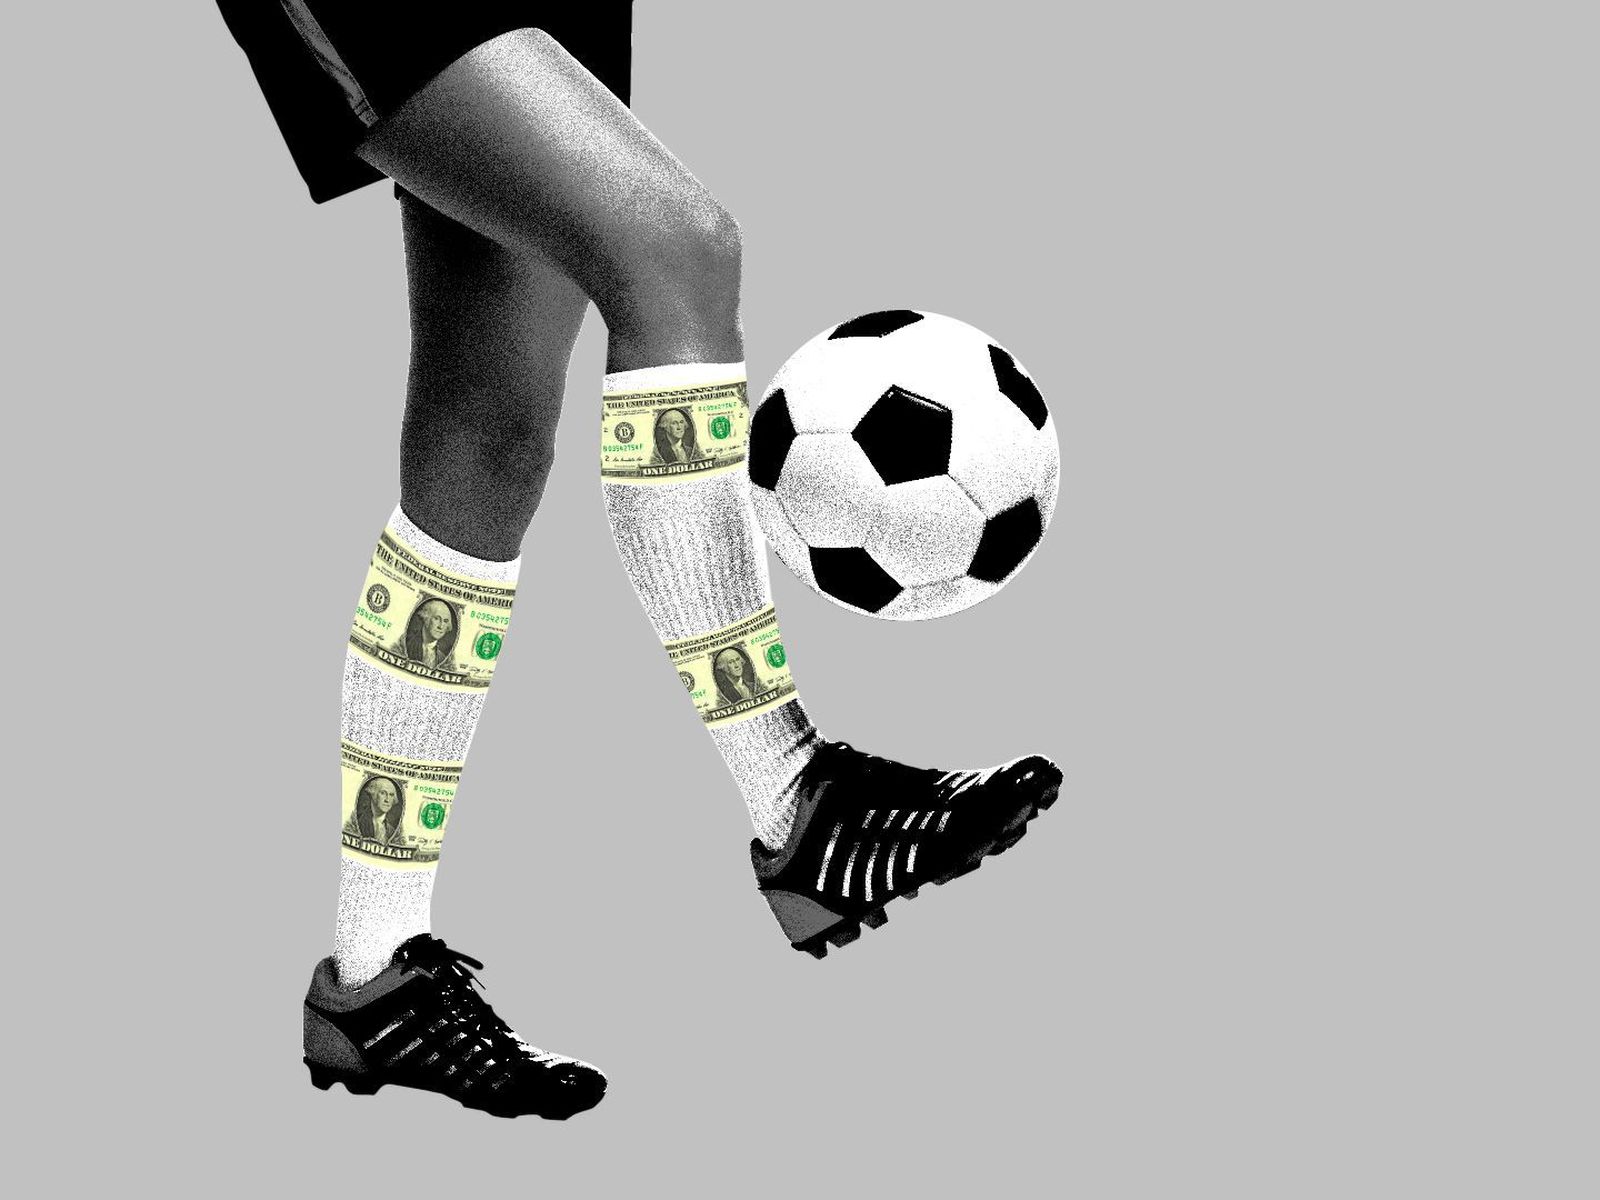 U.S. investors seek edge in European soccer